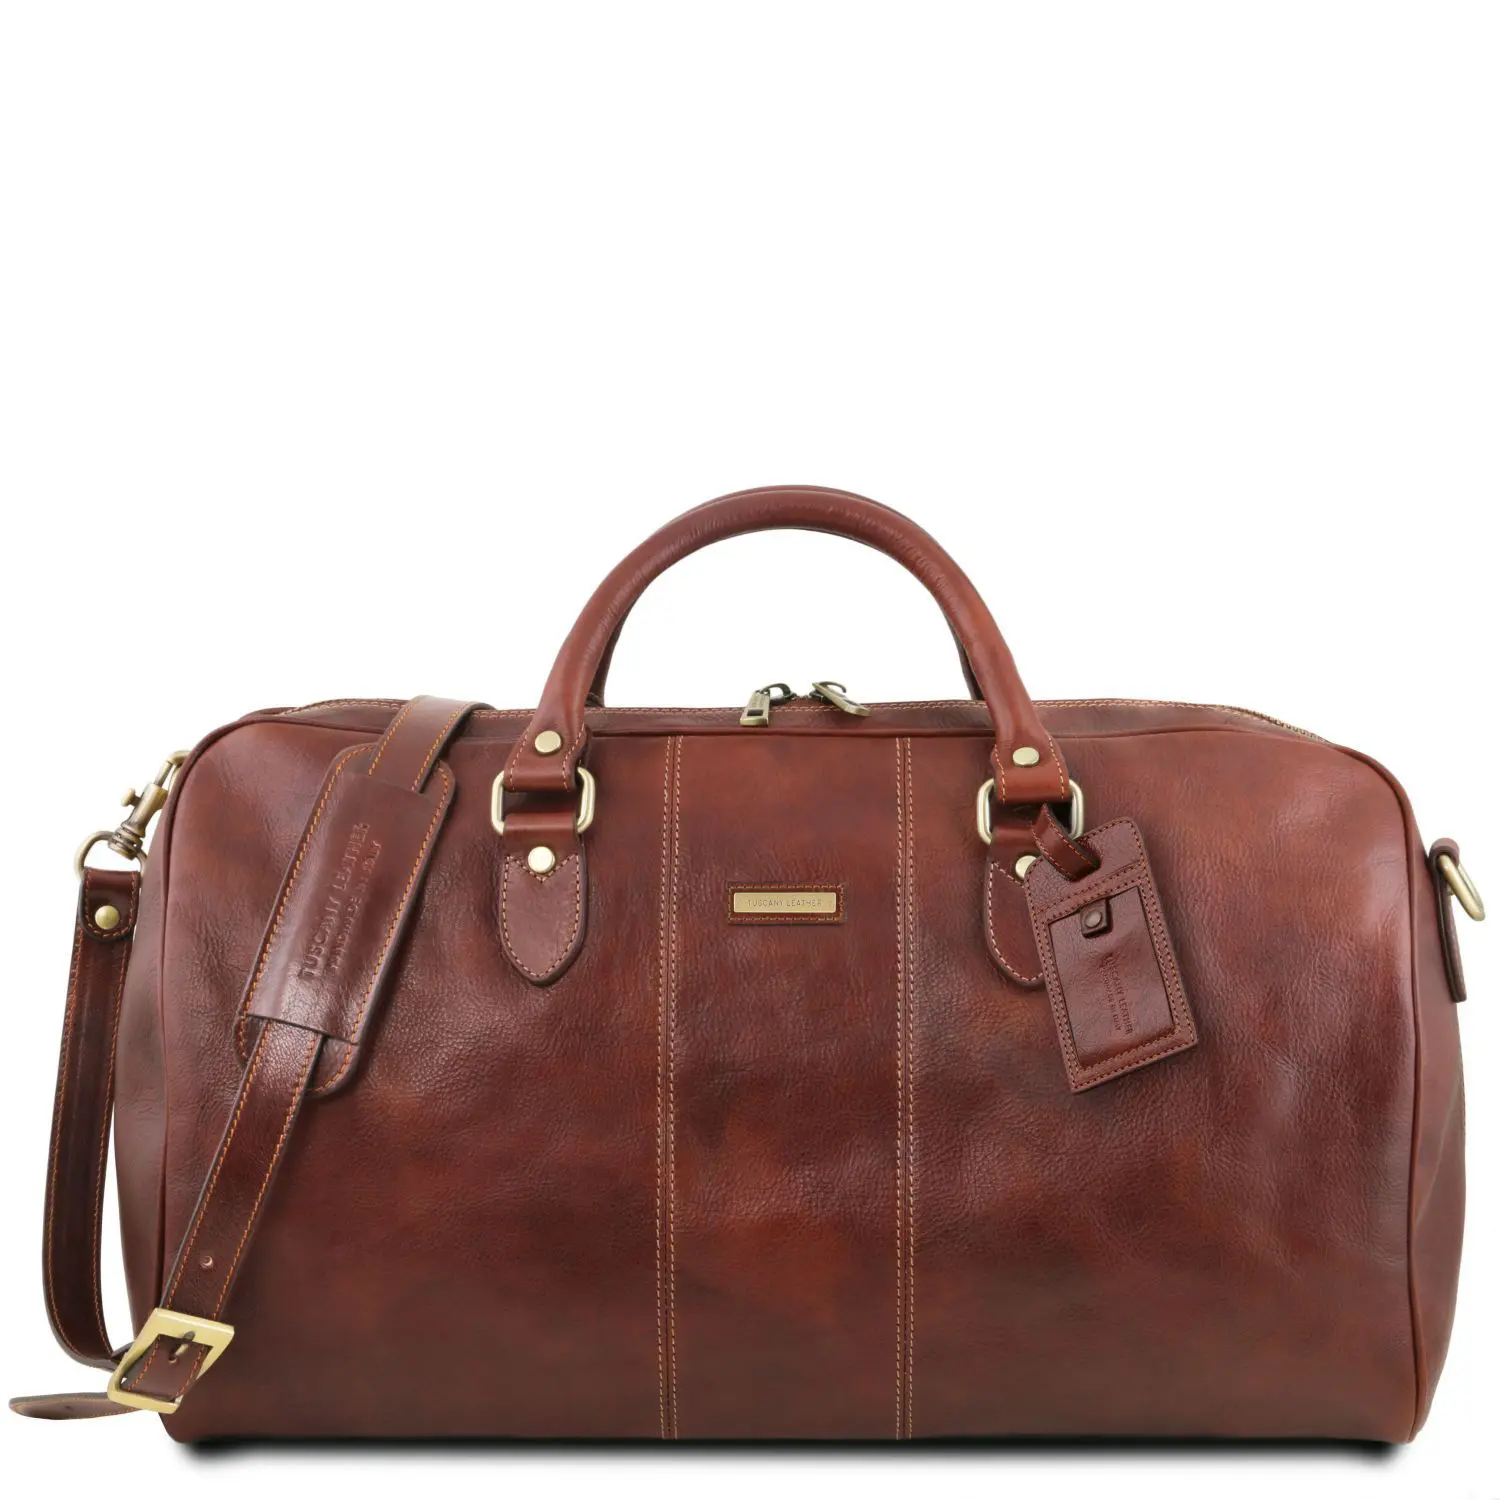 Travel Leather Duffle Bag - Large Size - Lisbon